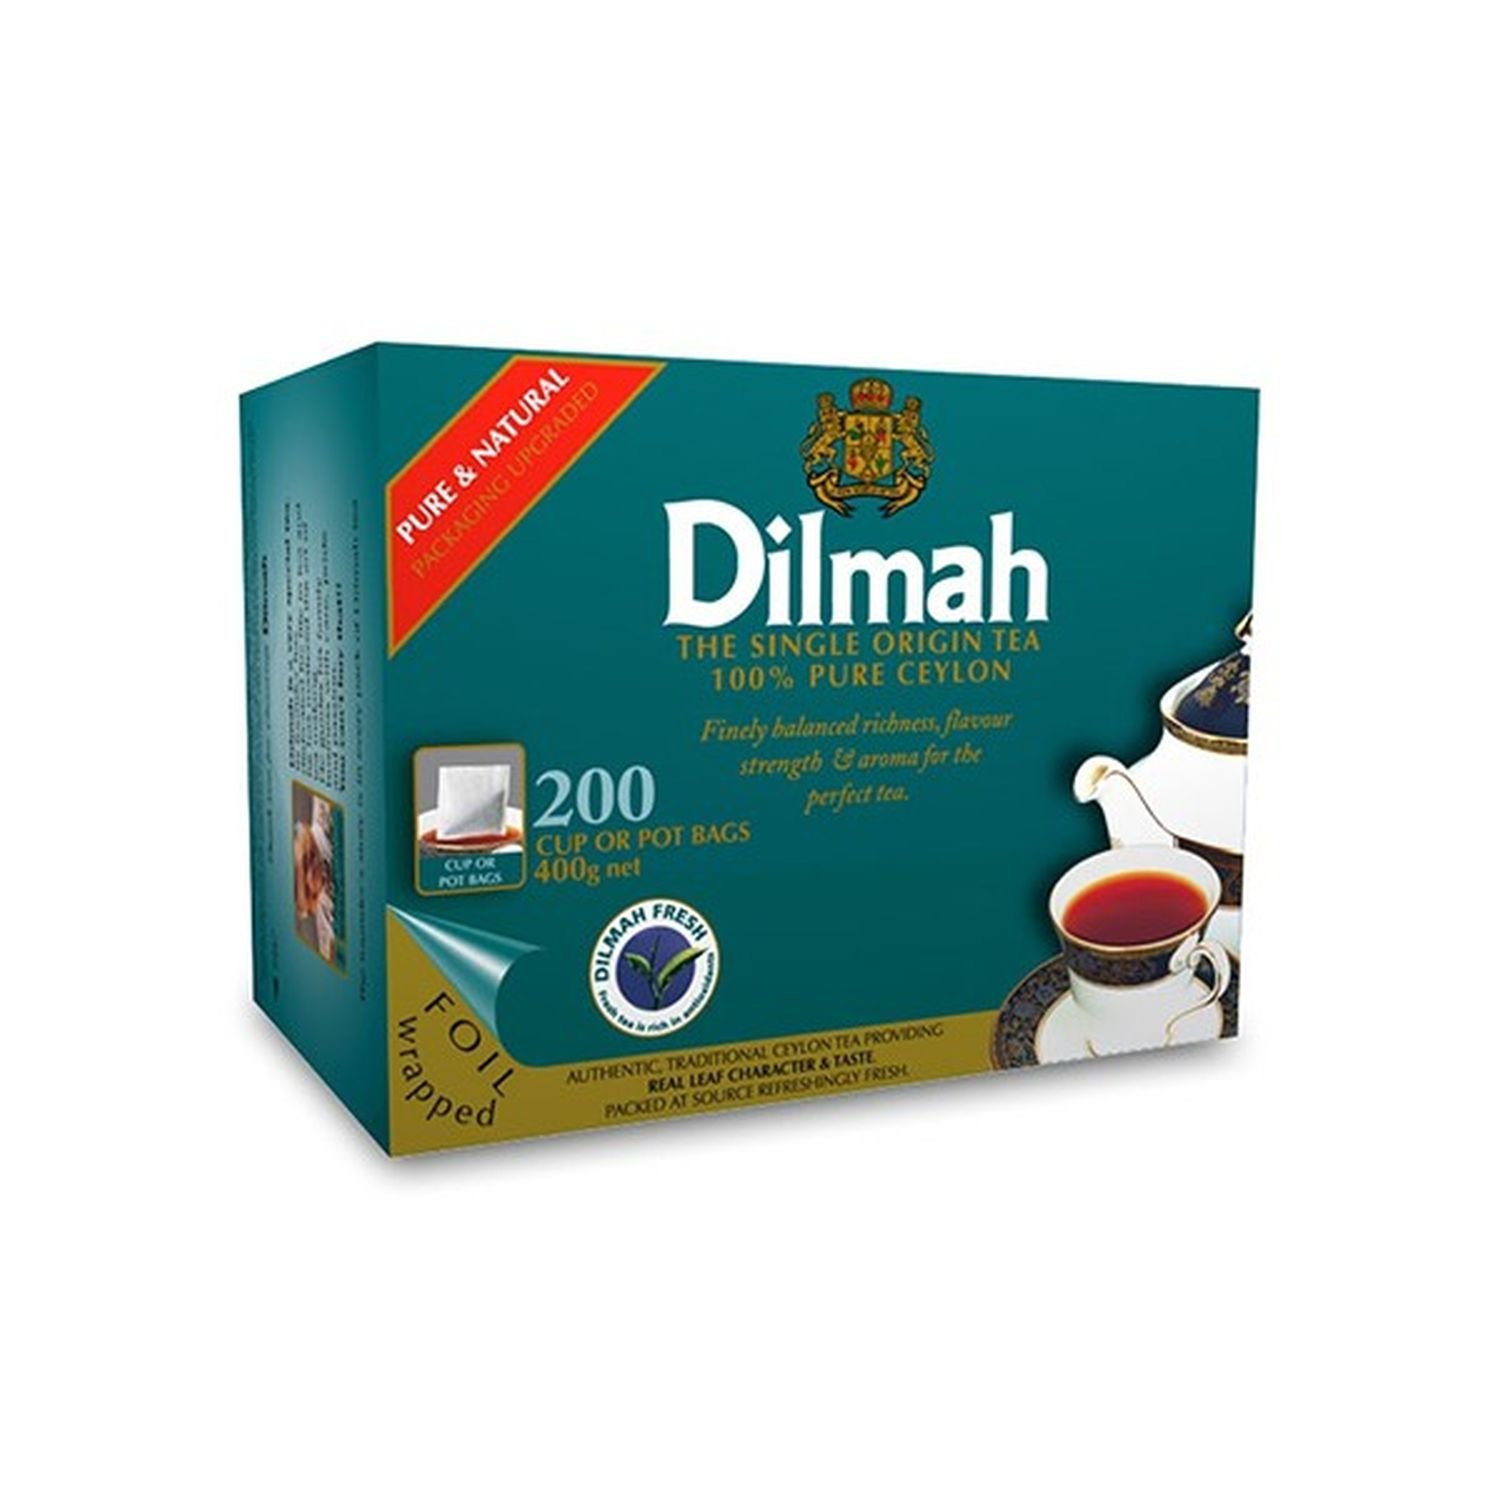 Dilmah Tea Bags Premium Pkt 200